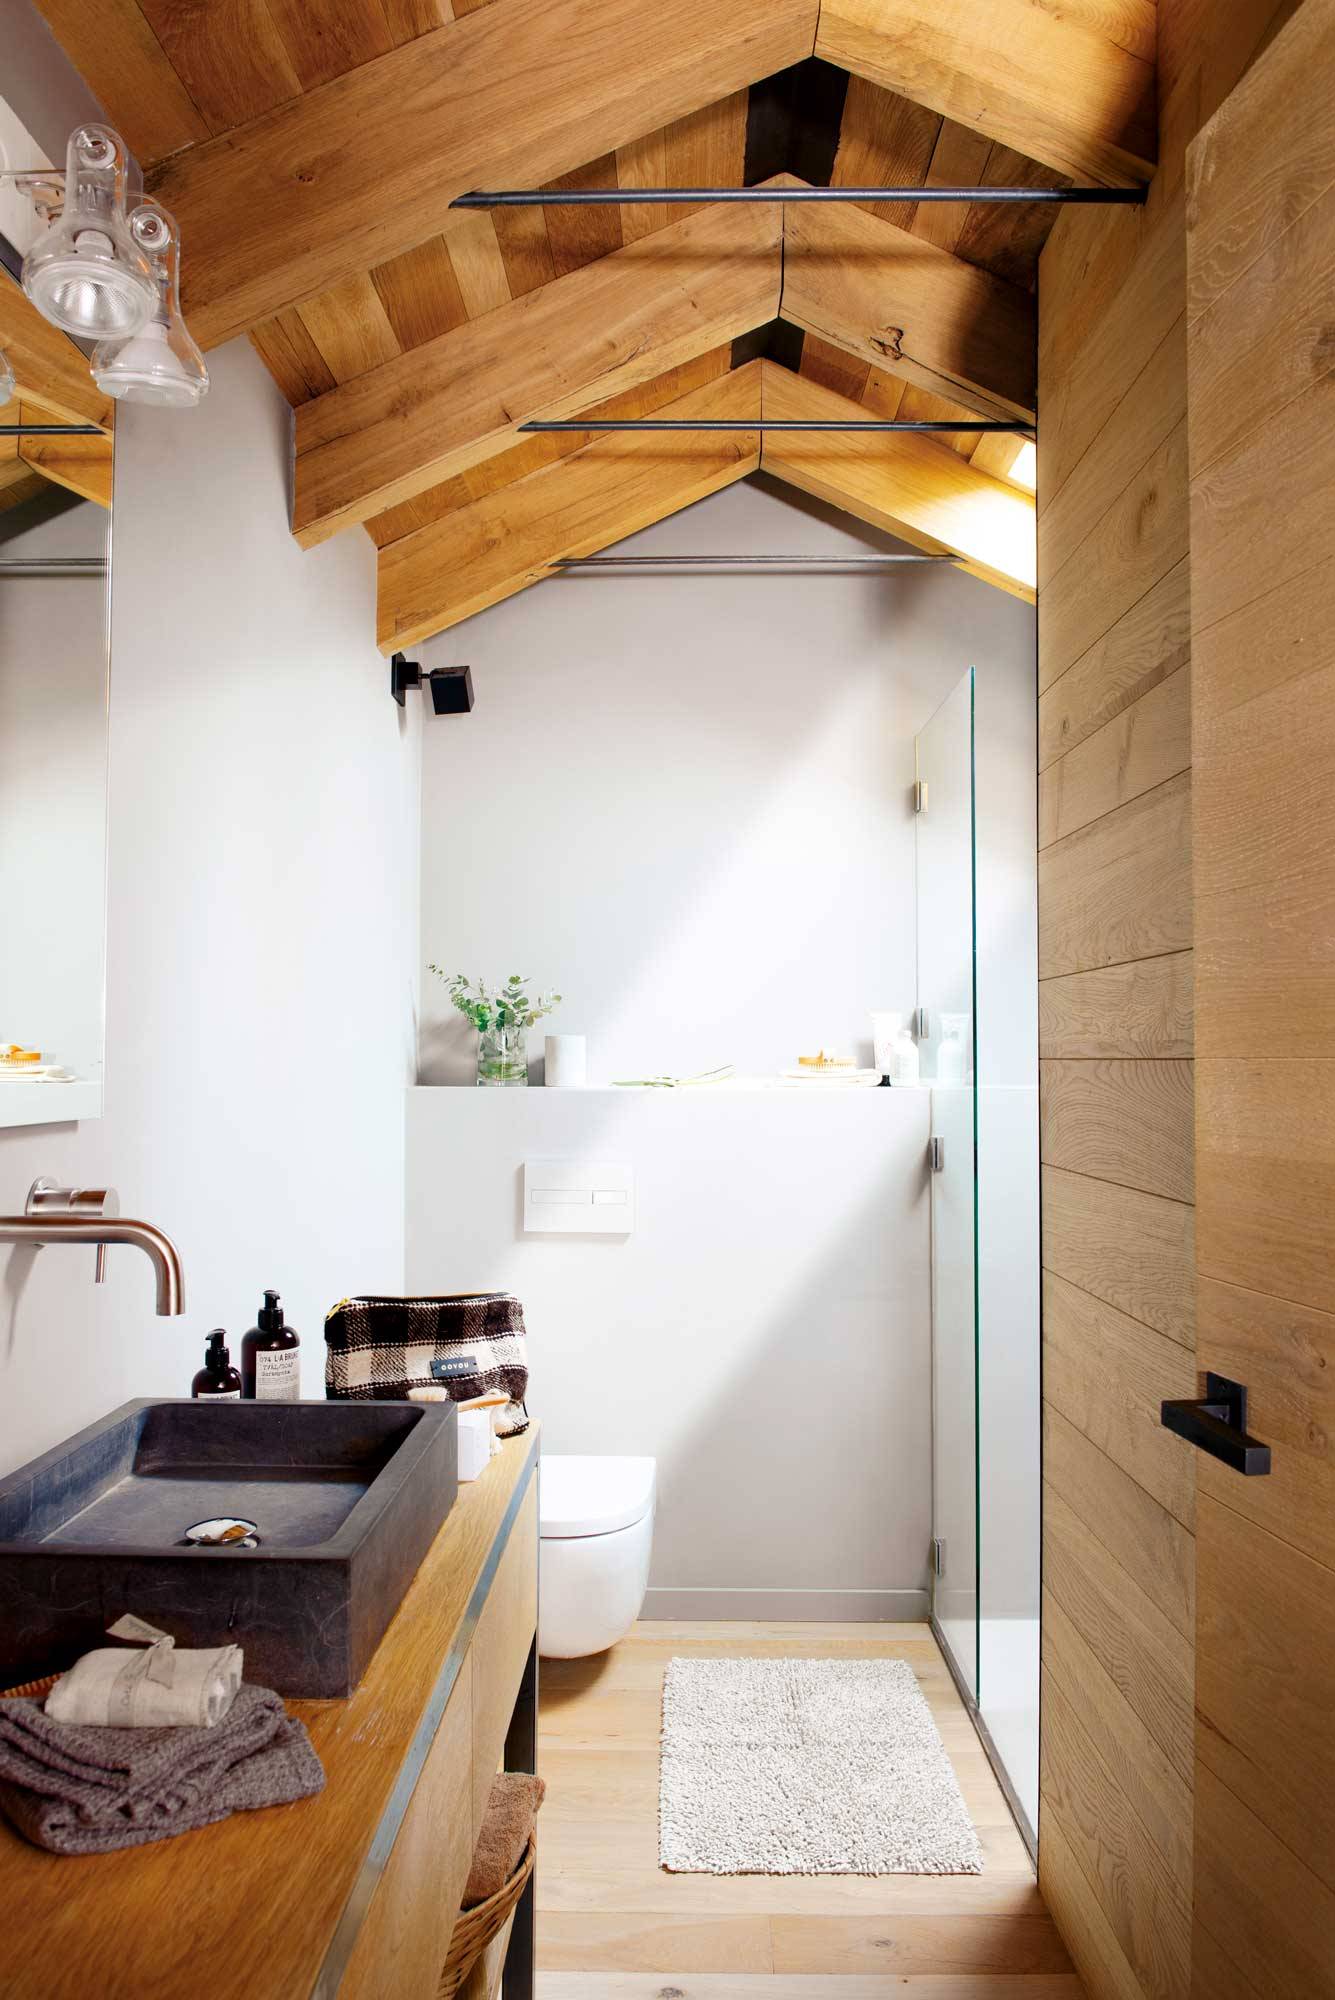 Baño pequeño moderno con techo abuhardillado de madera. 